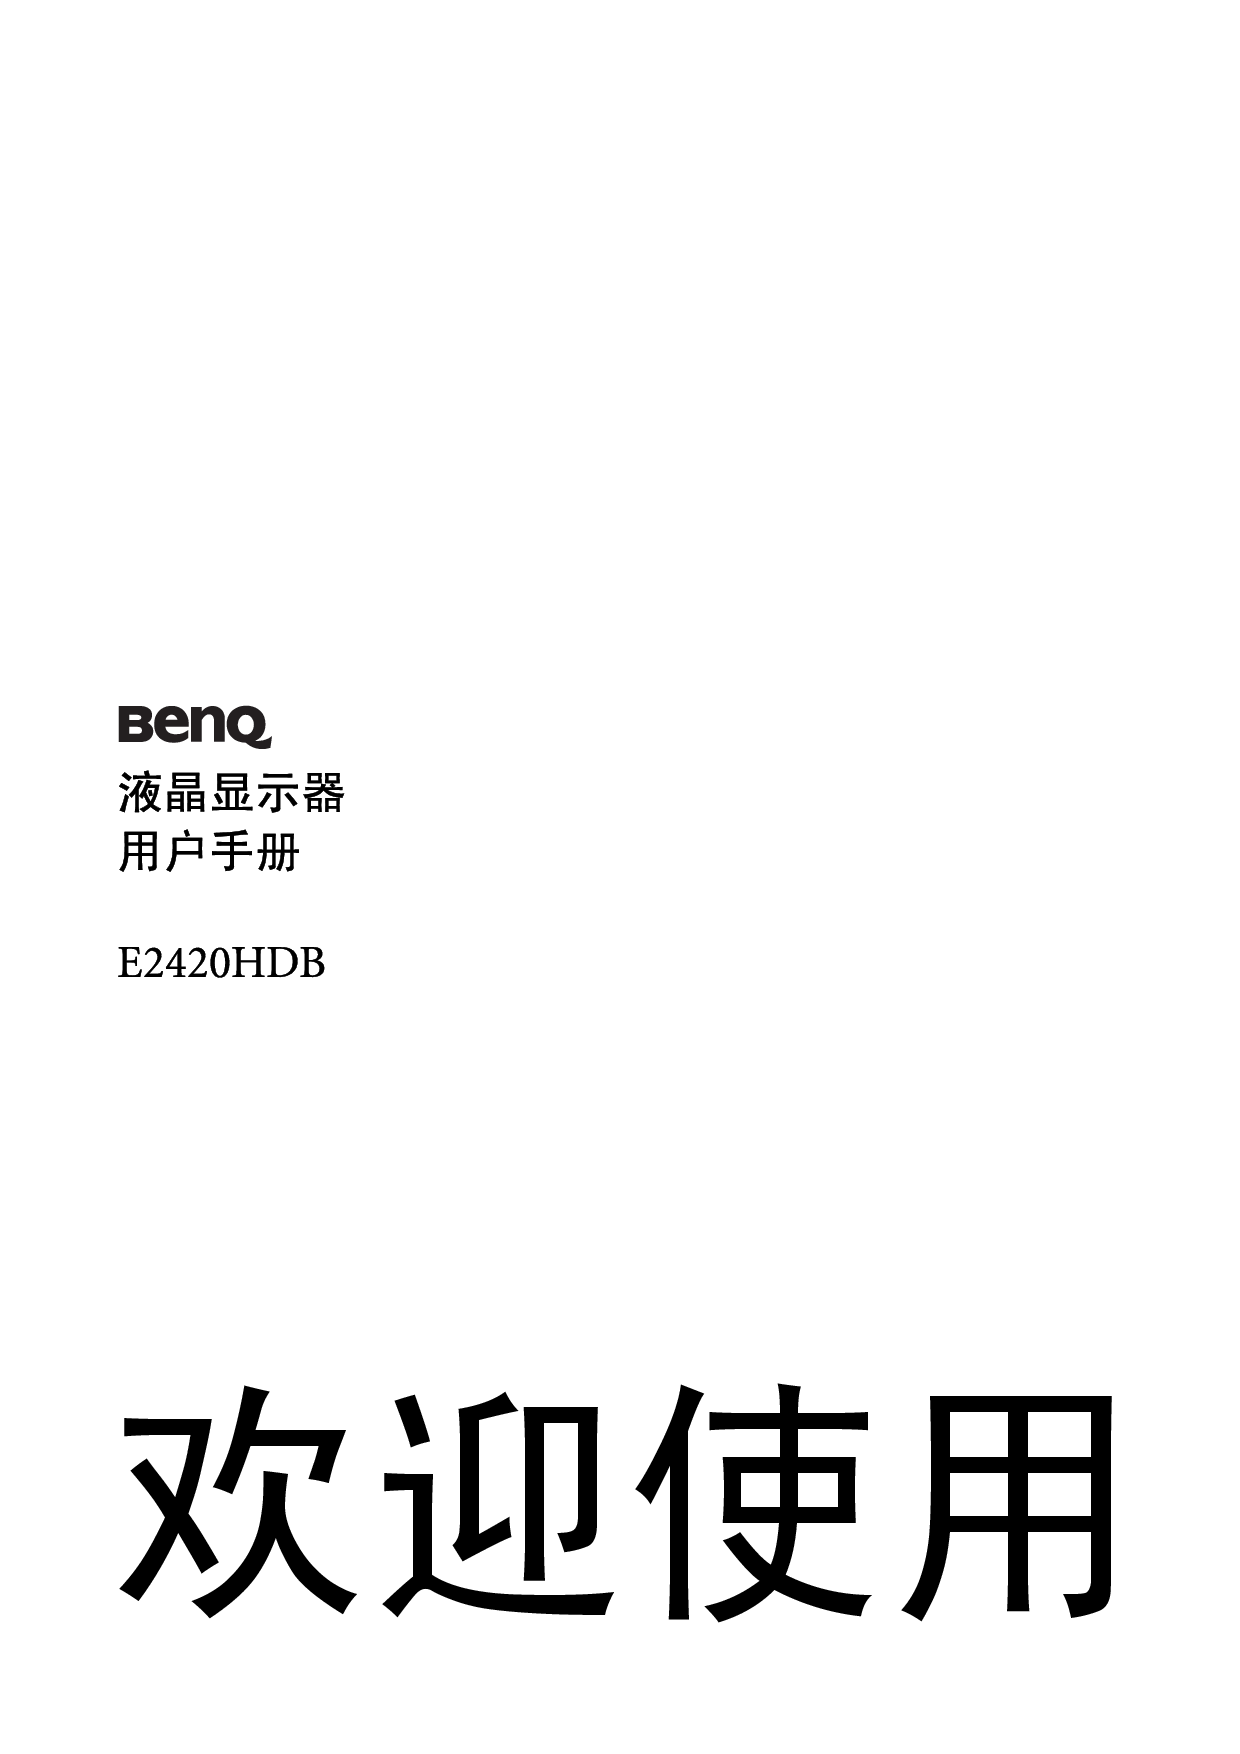 明基 Benq E2420HDB 使用手册 封面